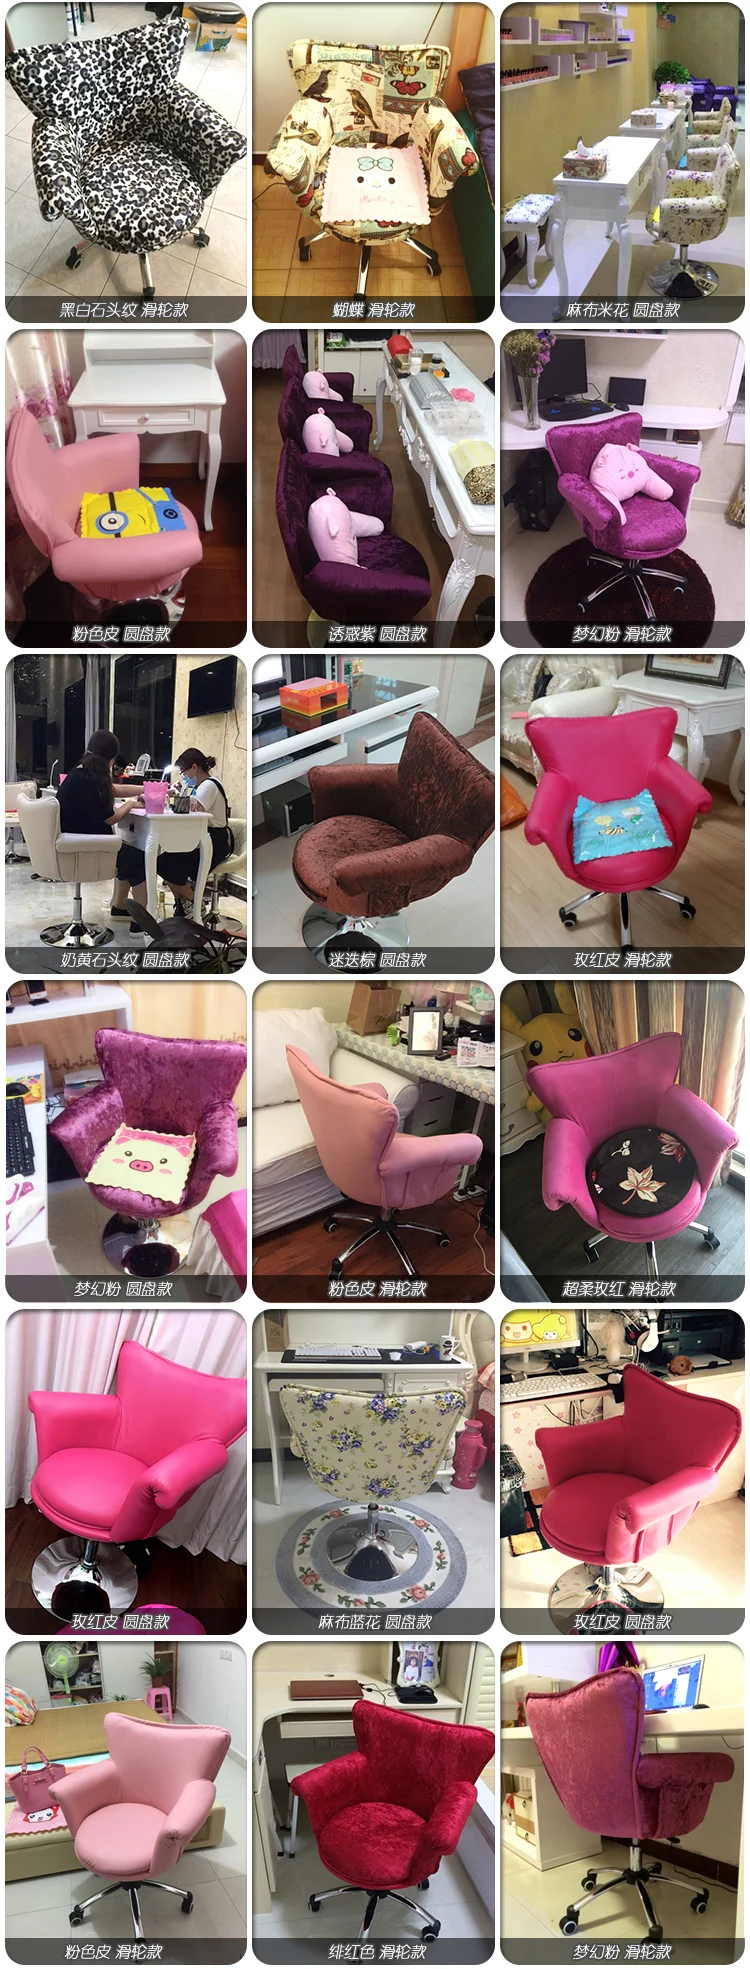 Удобный модный розовый компьютерный стул. Домашнее игровое кресло. Live стул